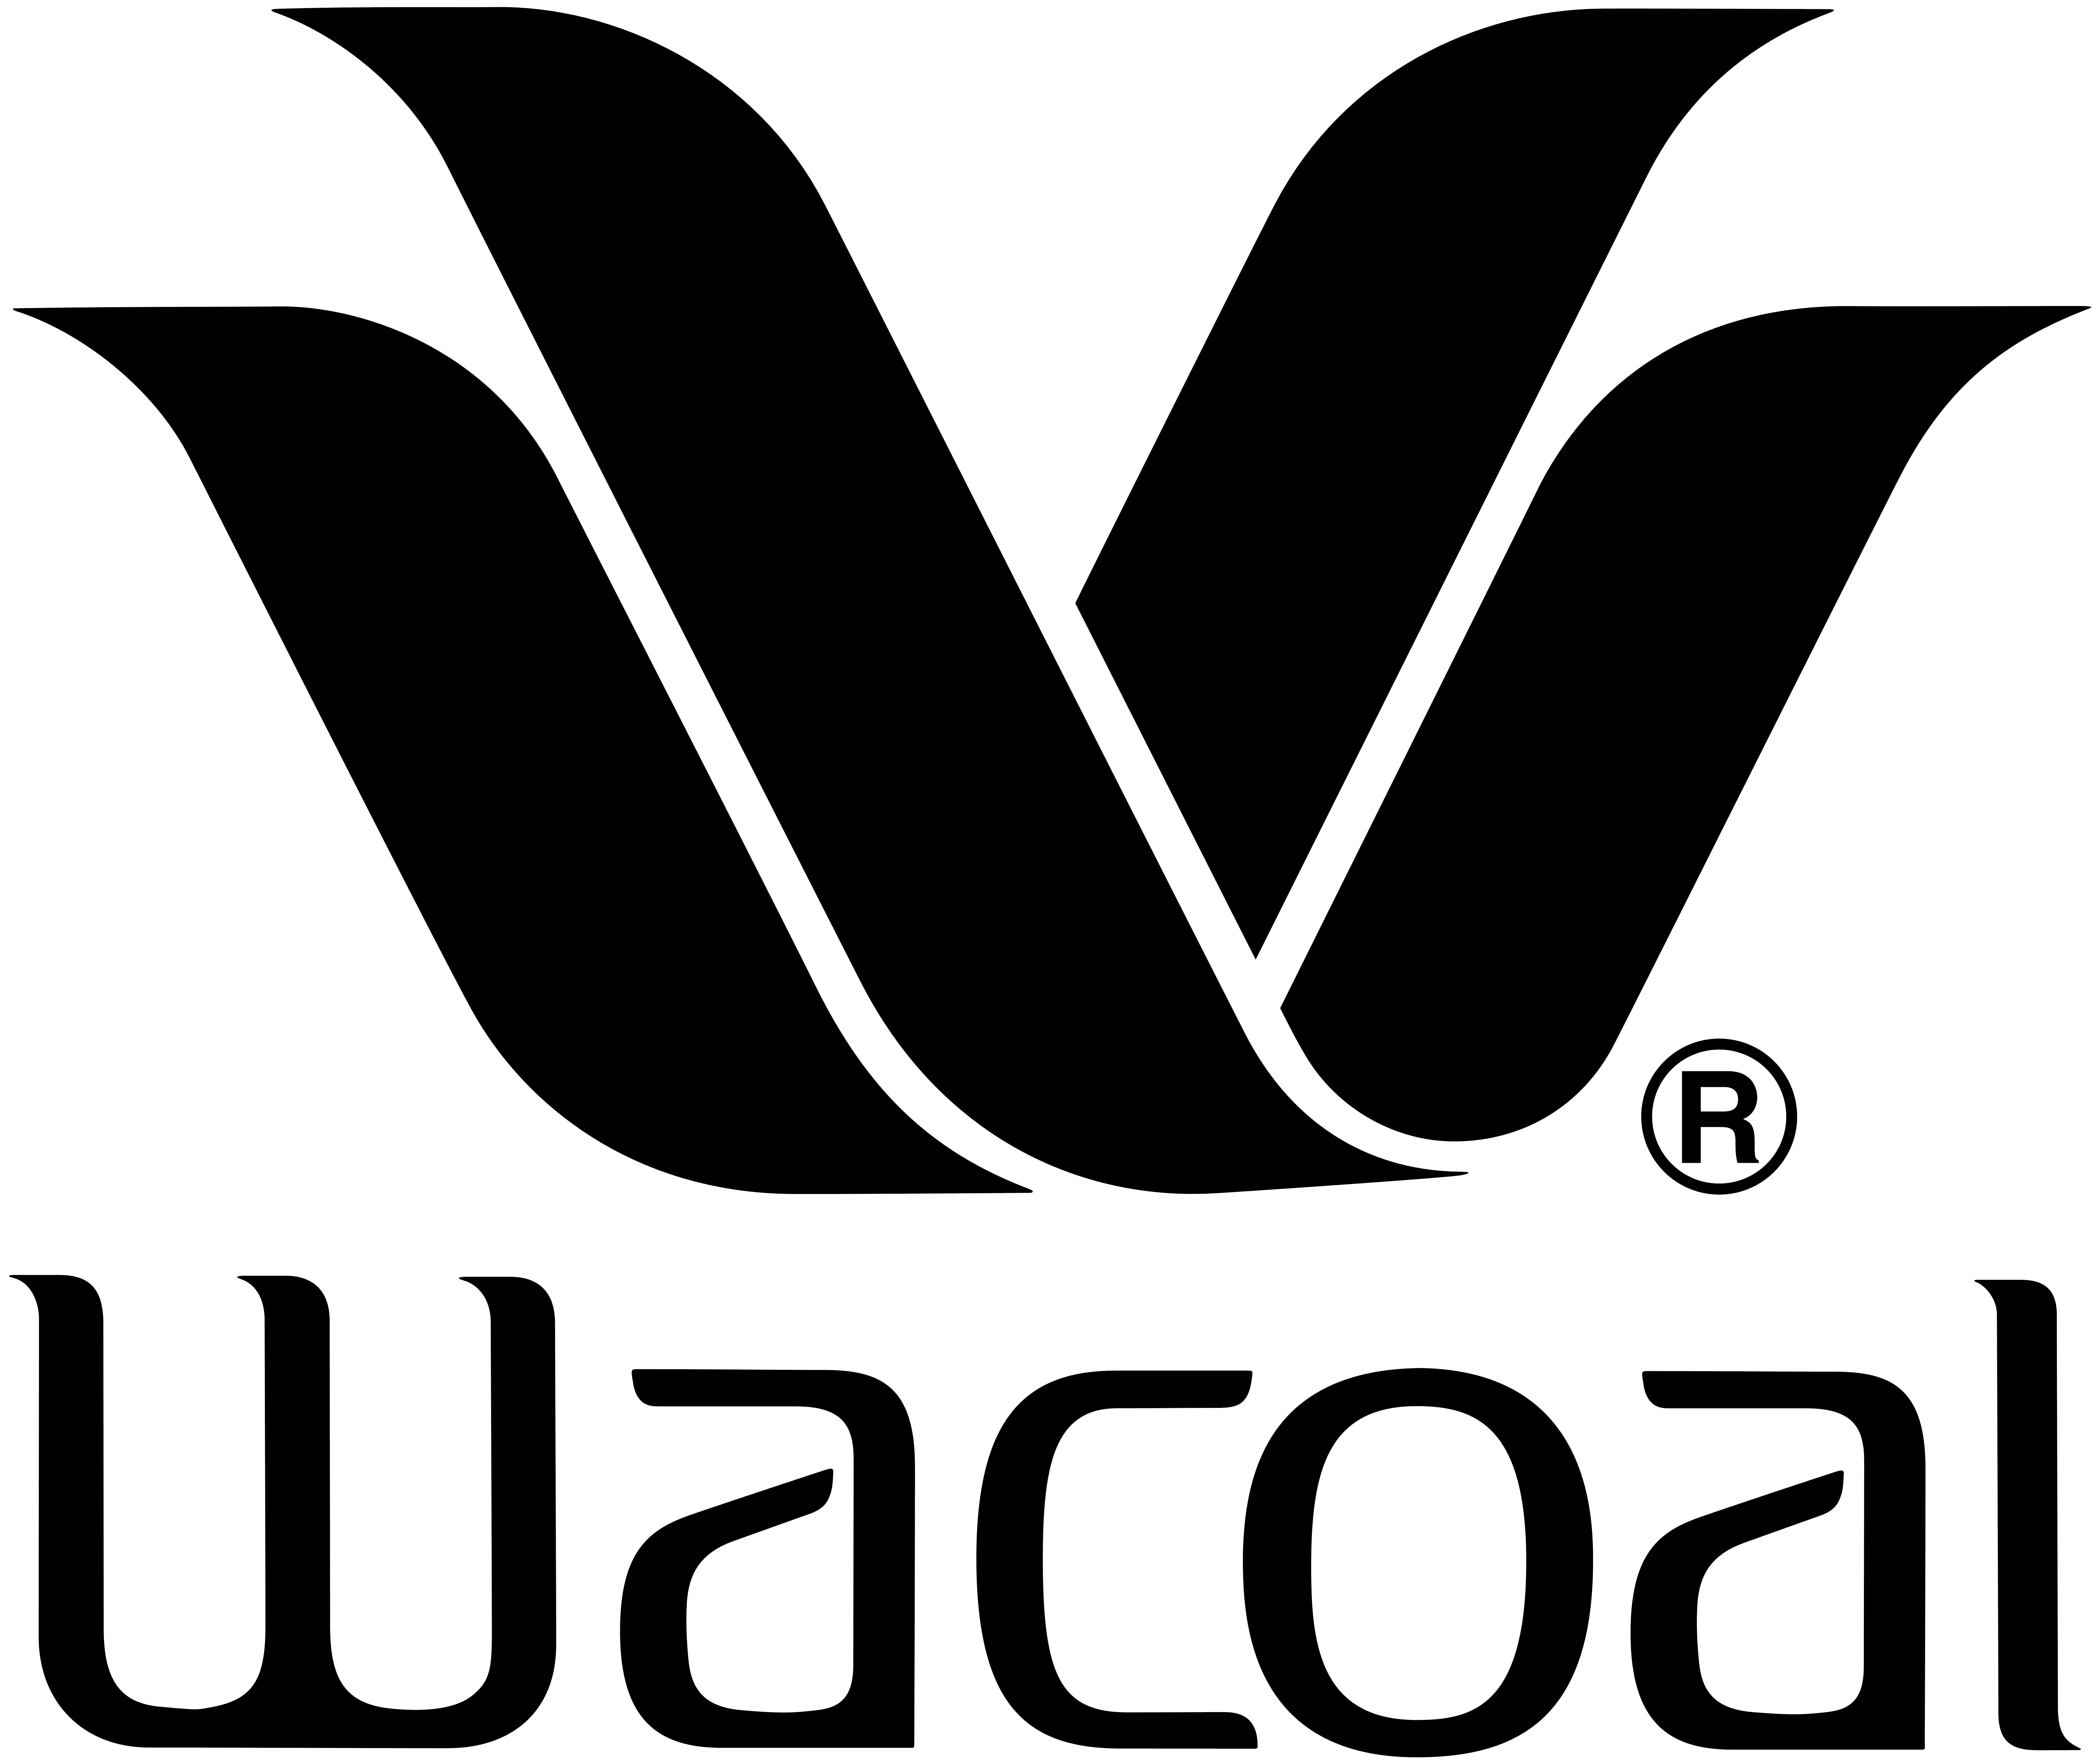 Wacoal Logo - Wacoal – Logos Download